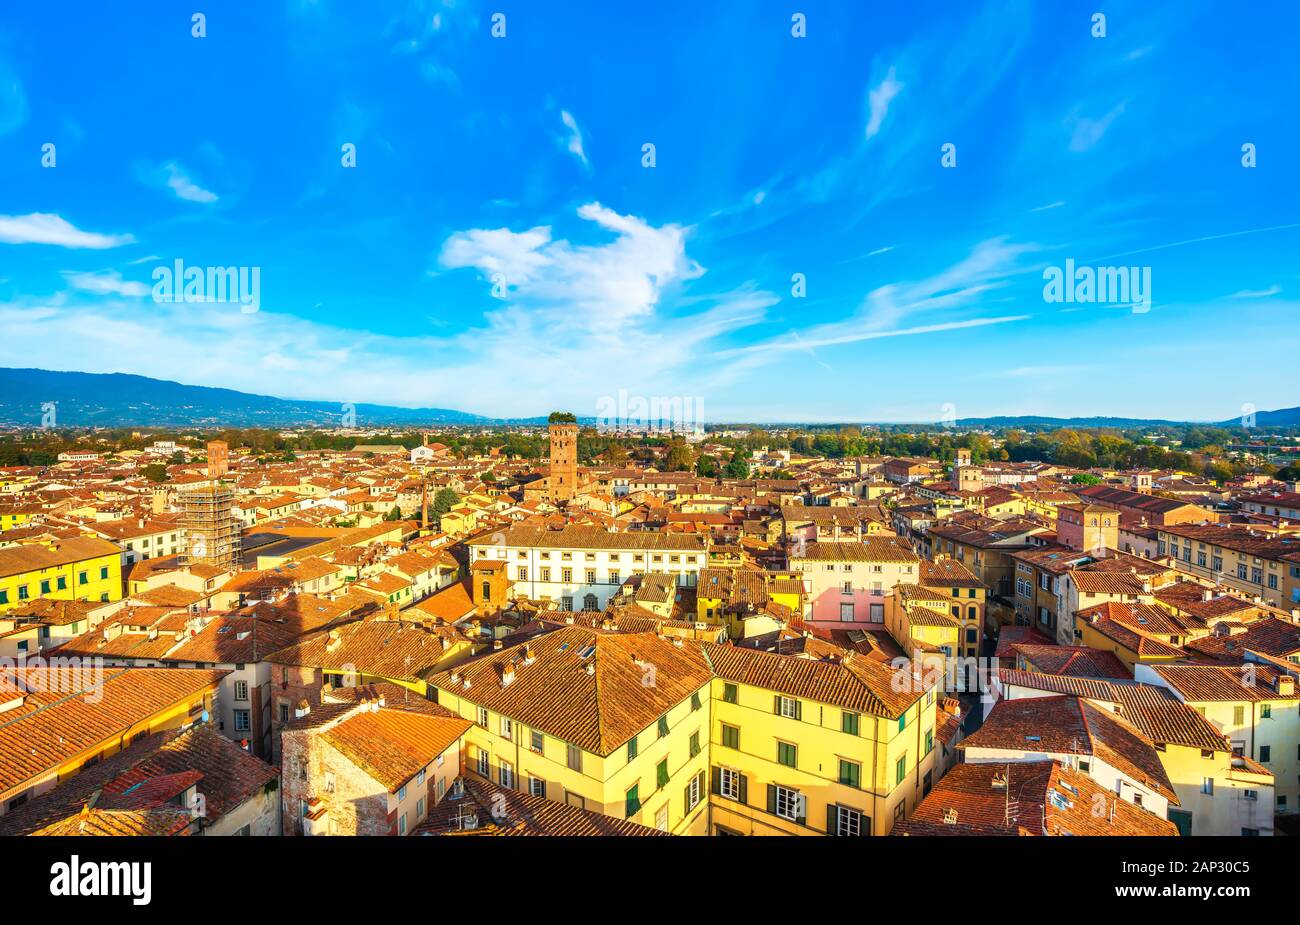 Lucca vue panoramique vue aérienne de la ville médiévale et tour Guinigi et ses arbres. La Toscane, Italie, Europe. Banque D'Images